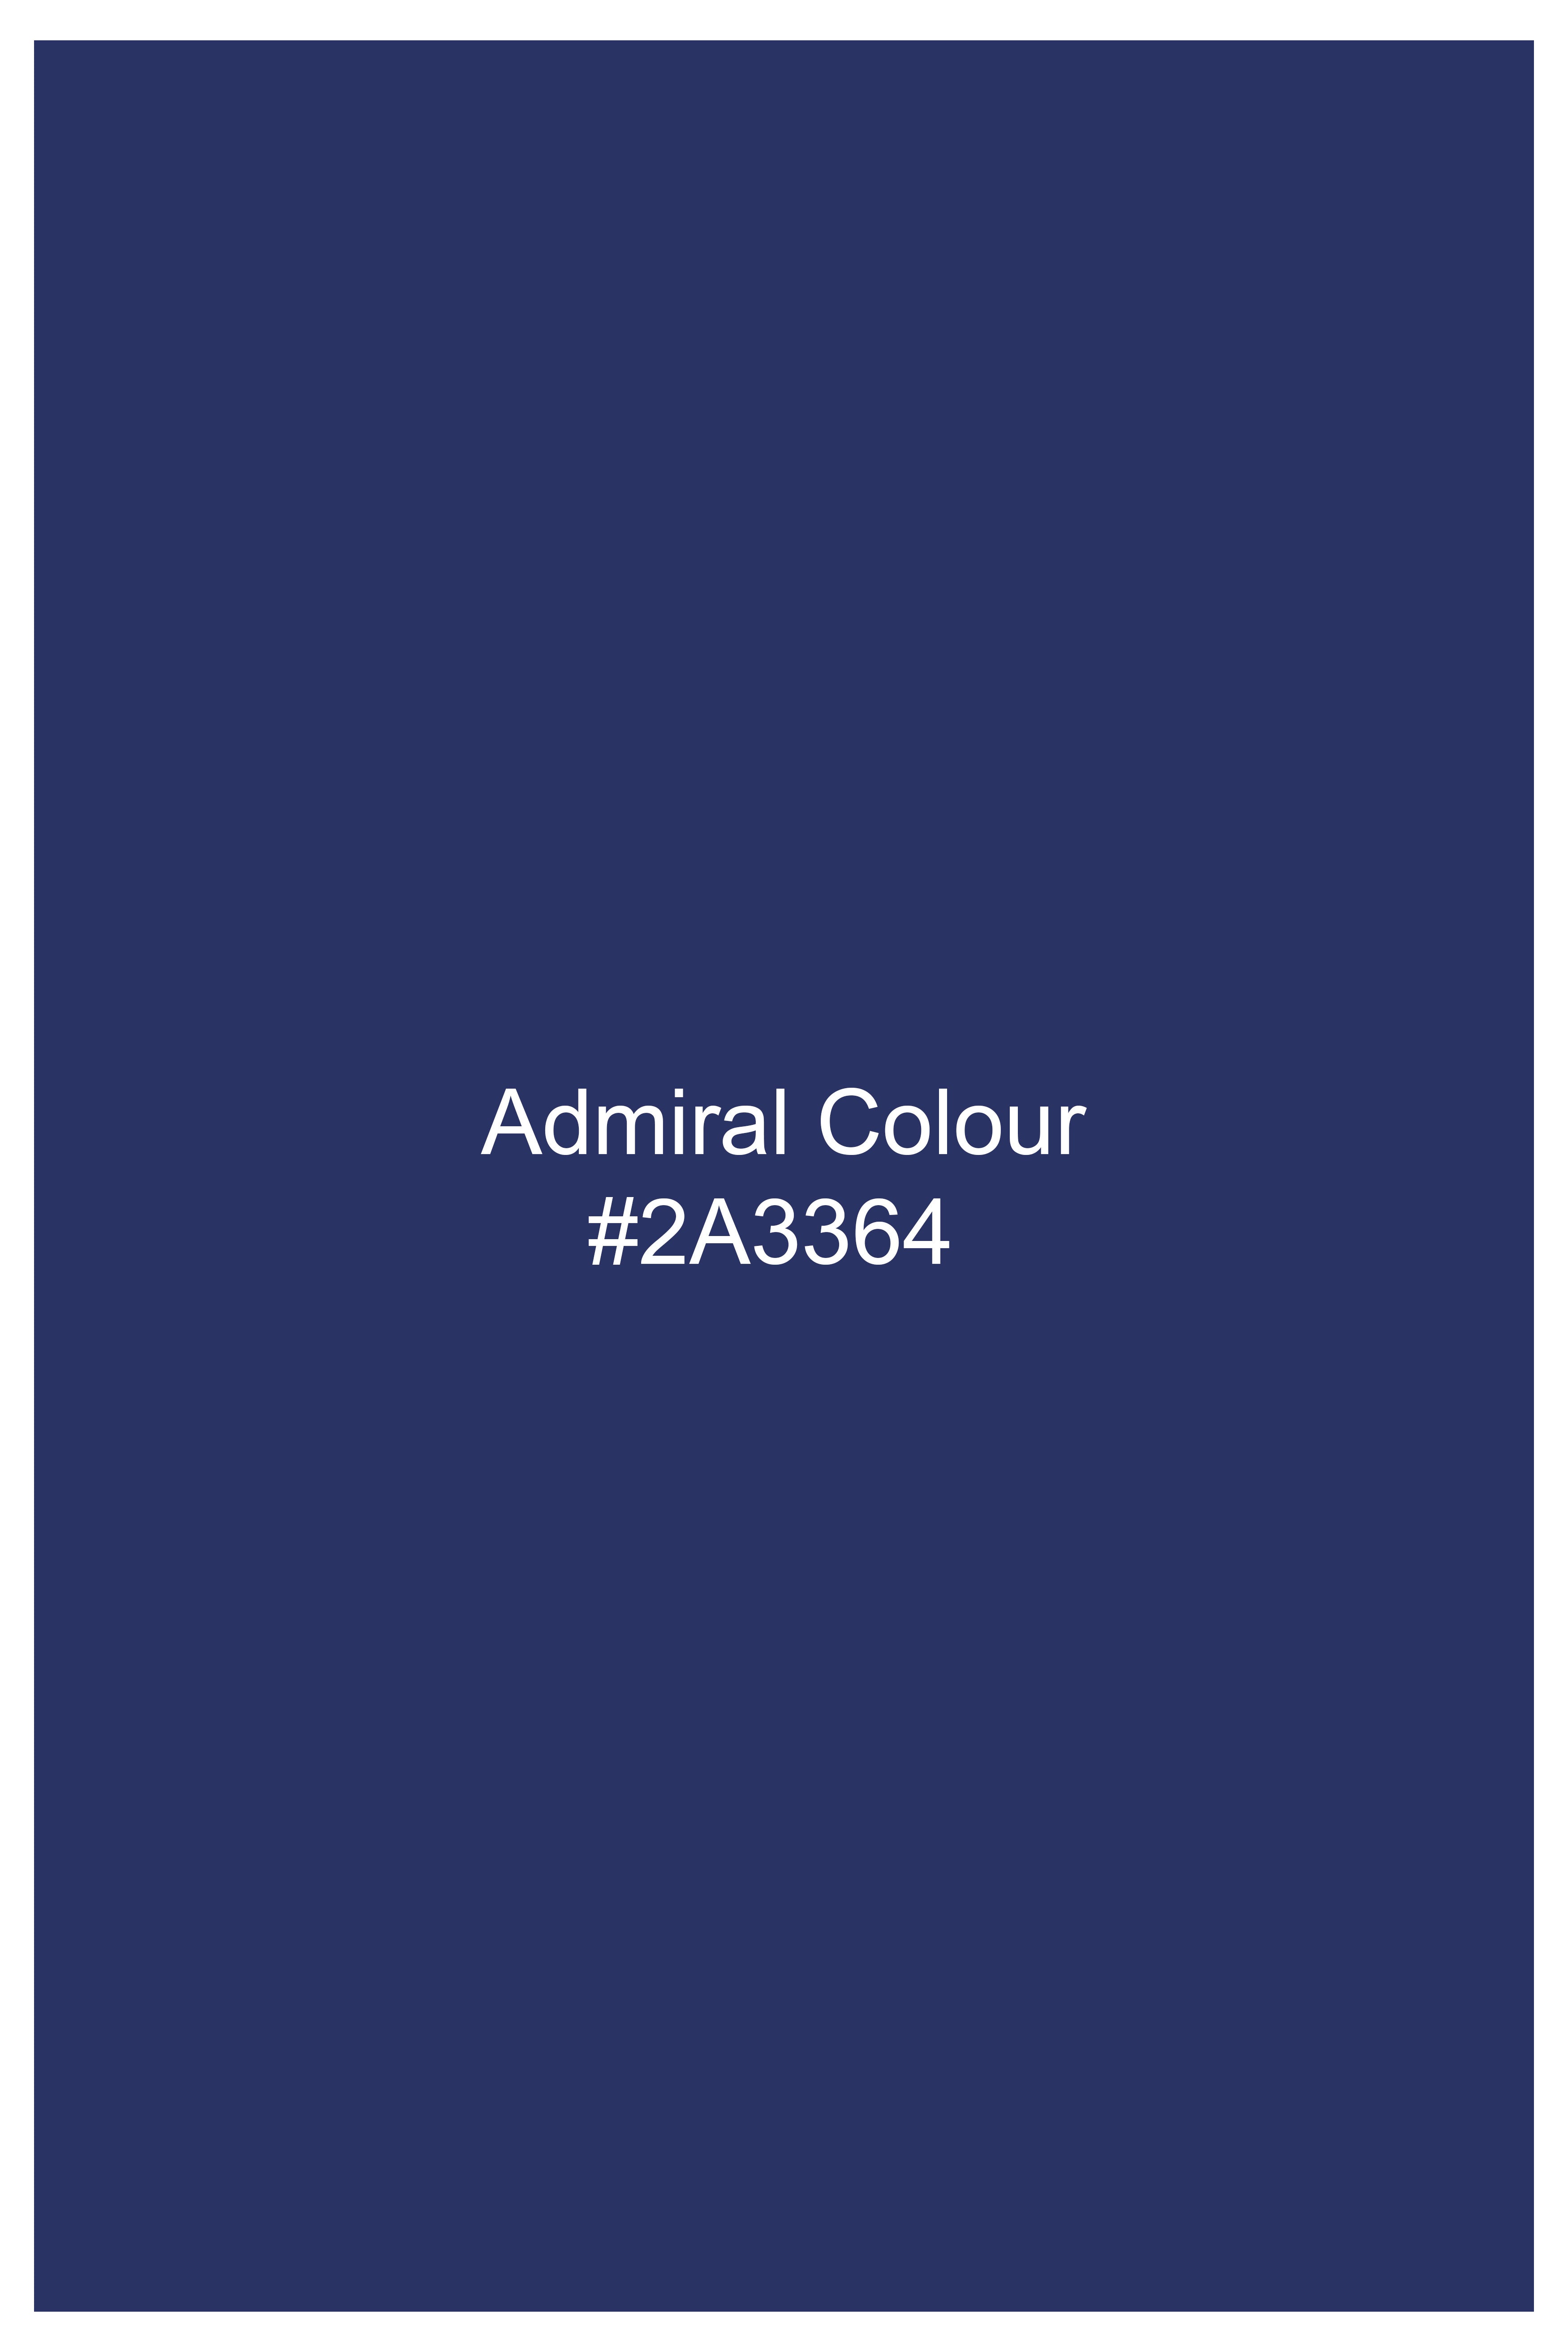 Admiral Blue Wool Rich Waistcoat V3057-36, V3057-38, V3057-40, V3057-42, V3057-44, V3057-46, V3057-48, V3057-50, V3057-57, V3057-54, V3057-56, V3057-58, V3057-60